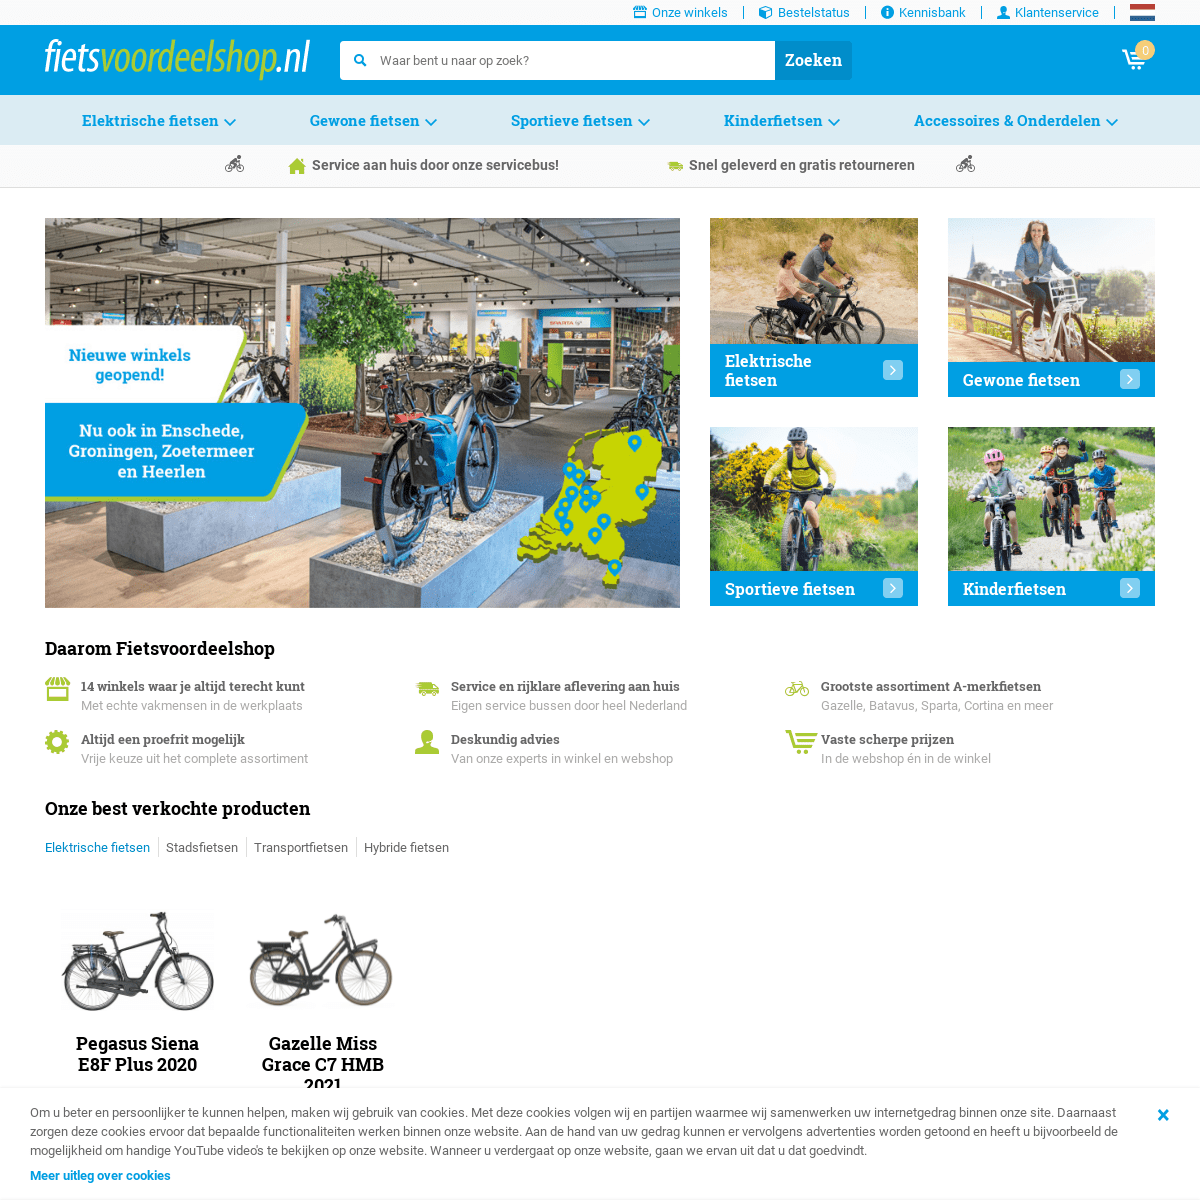 A complete backup of https://fietsvoordeelshop.nl